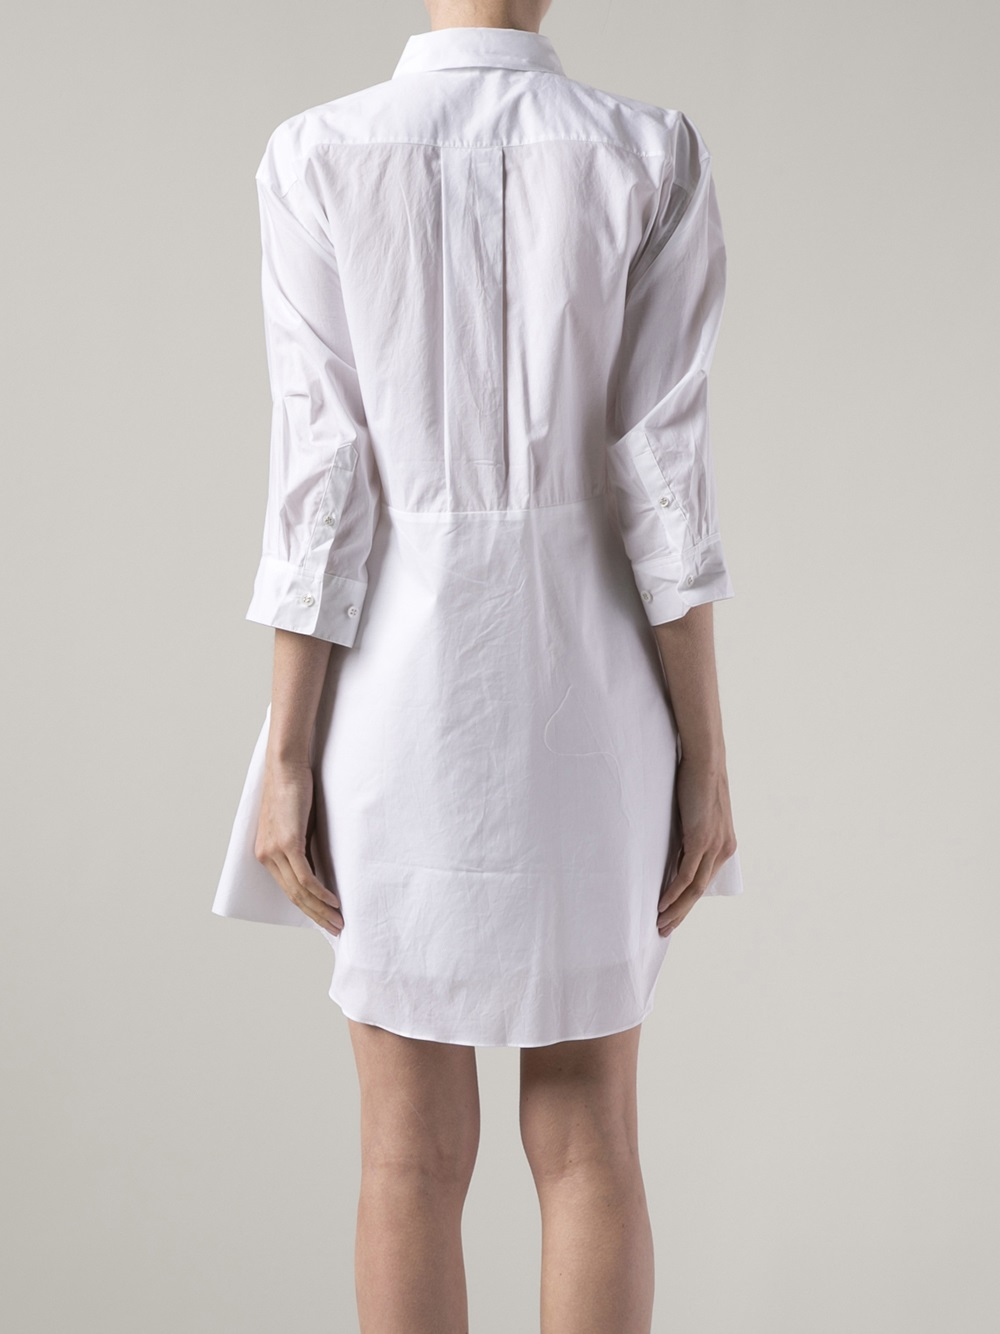 Lyst - Acne studios Short Shirt Dress in White